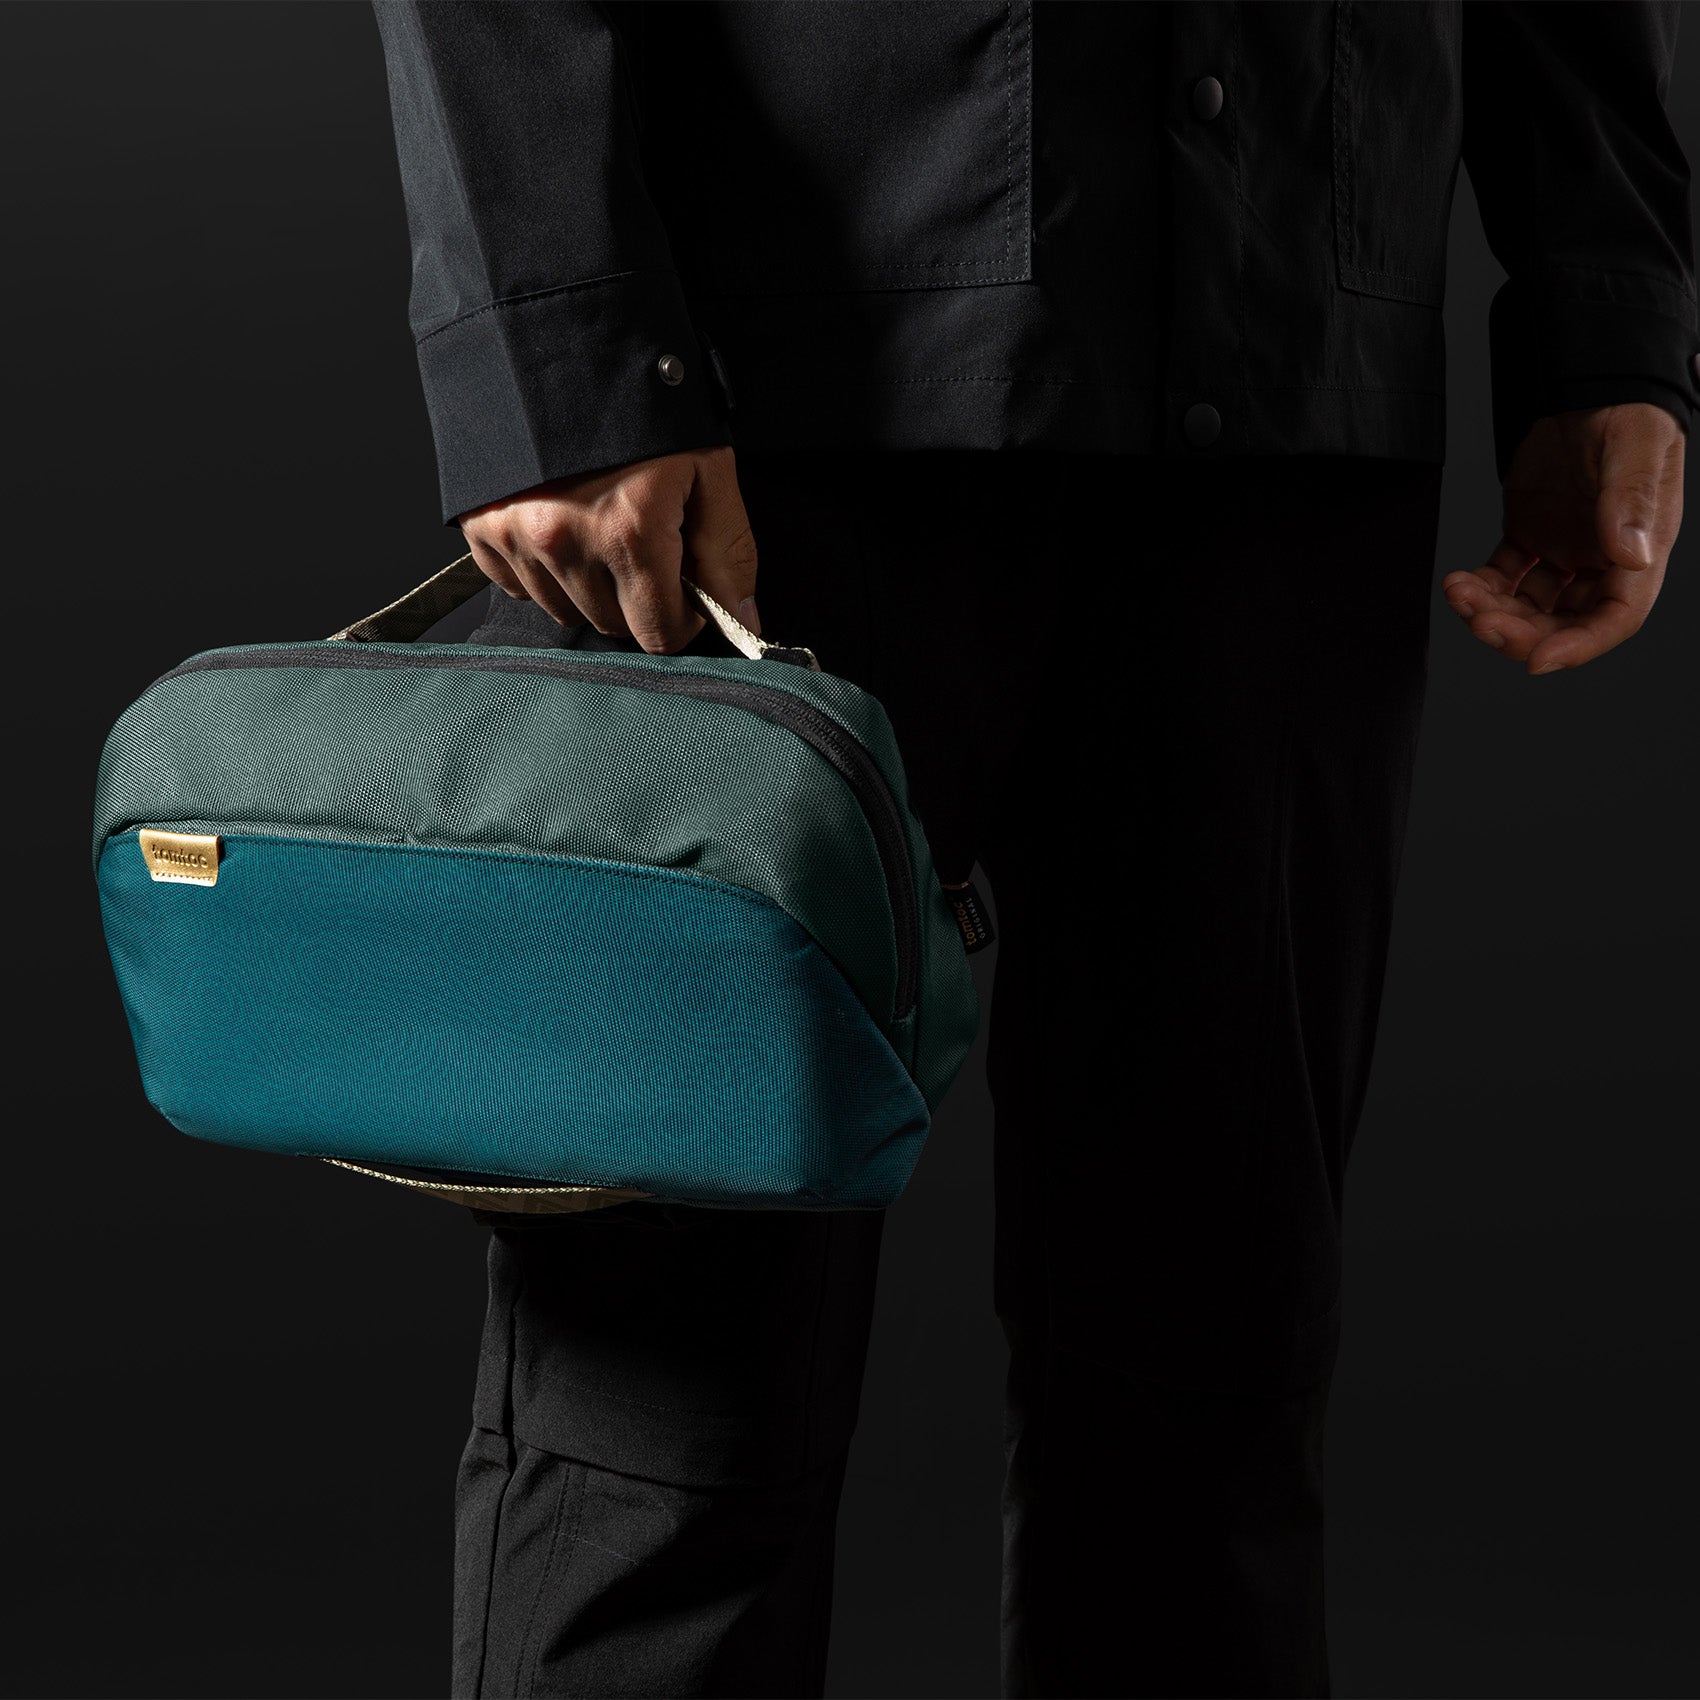 tomtoc G-Sling Crossbody Shoulder Bag / Crossbody Bag / Men Bag / Nintendo Switch Bag - Turquoise